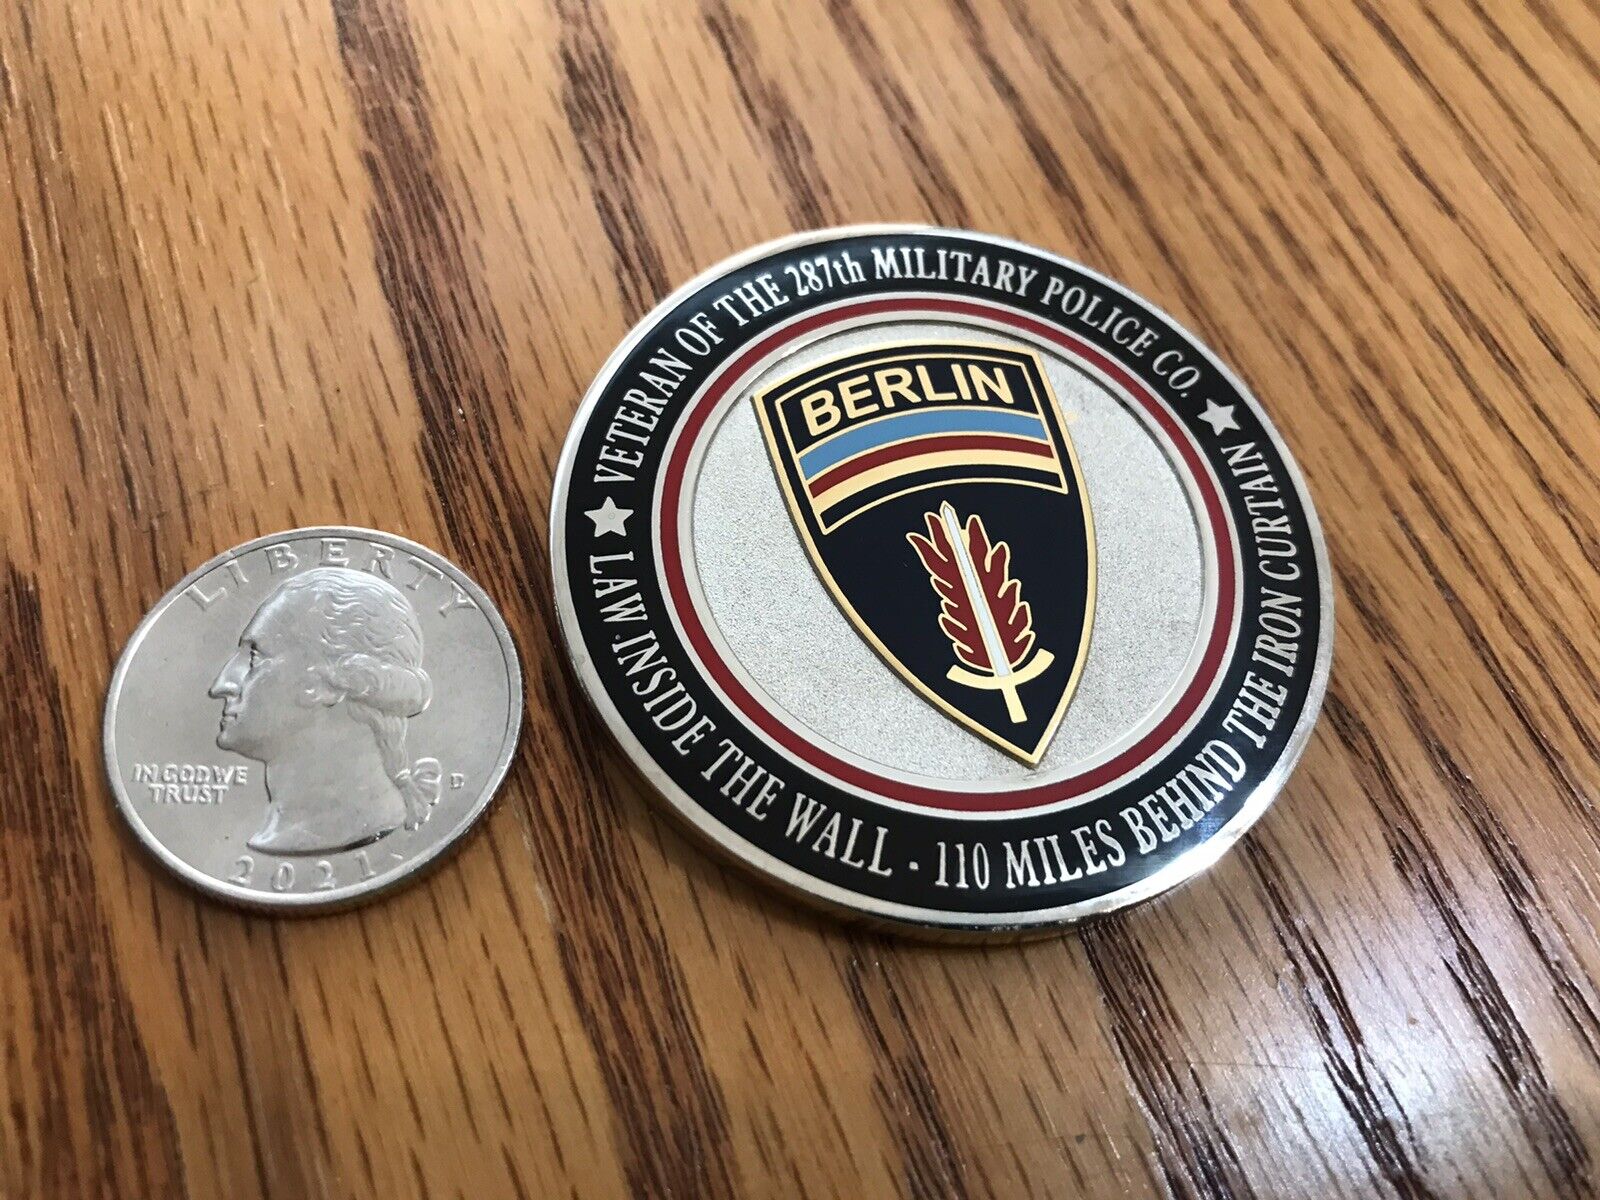 U.S Army Berlin Brigade - Checkpoint Charlie Veterans Coin